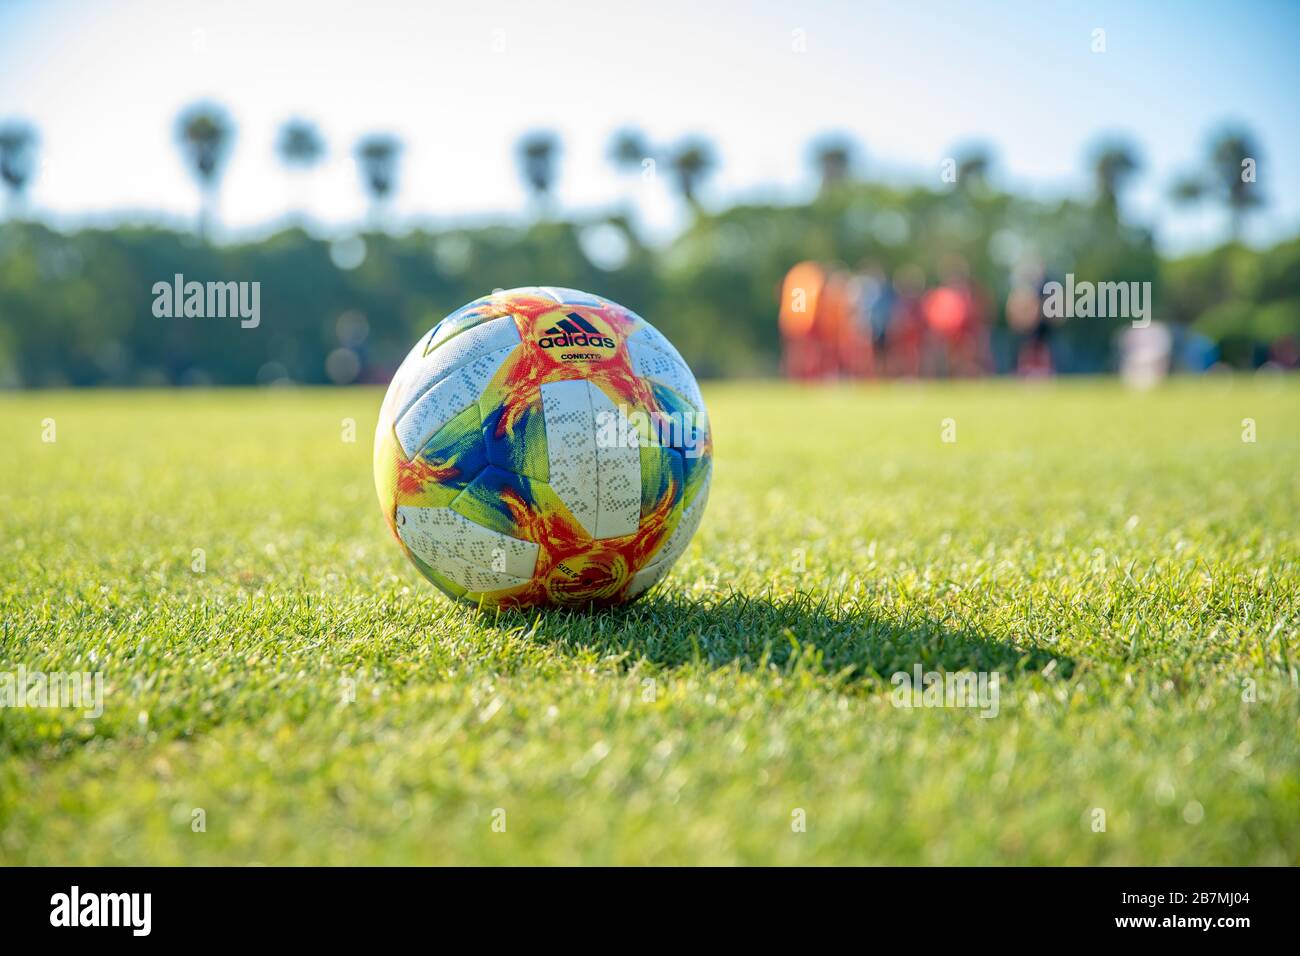 Chiklana de la frontera, Spain - January 9, 2020: ball with the adidas logo  on the football field Stock Photo - Alamy